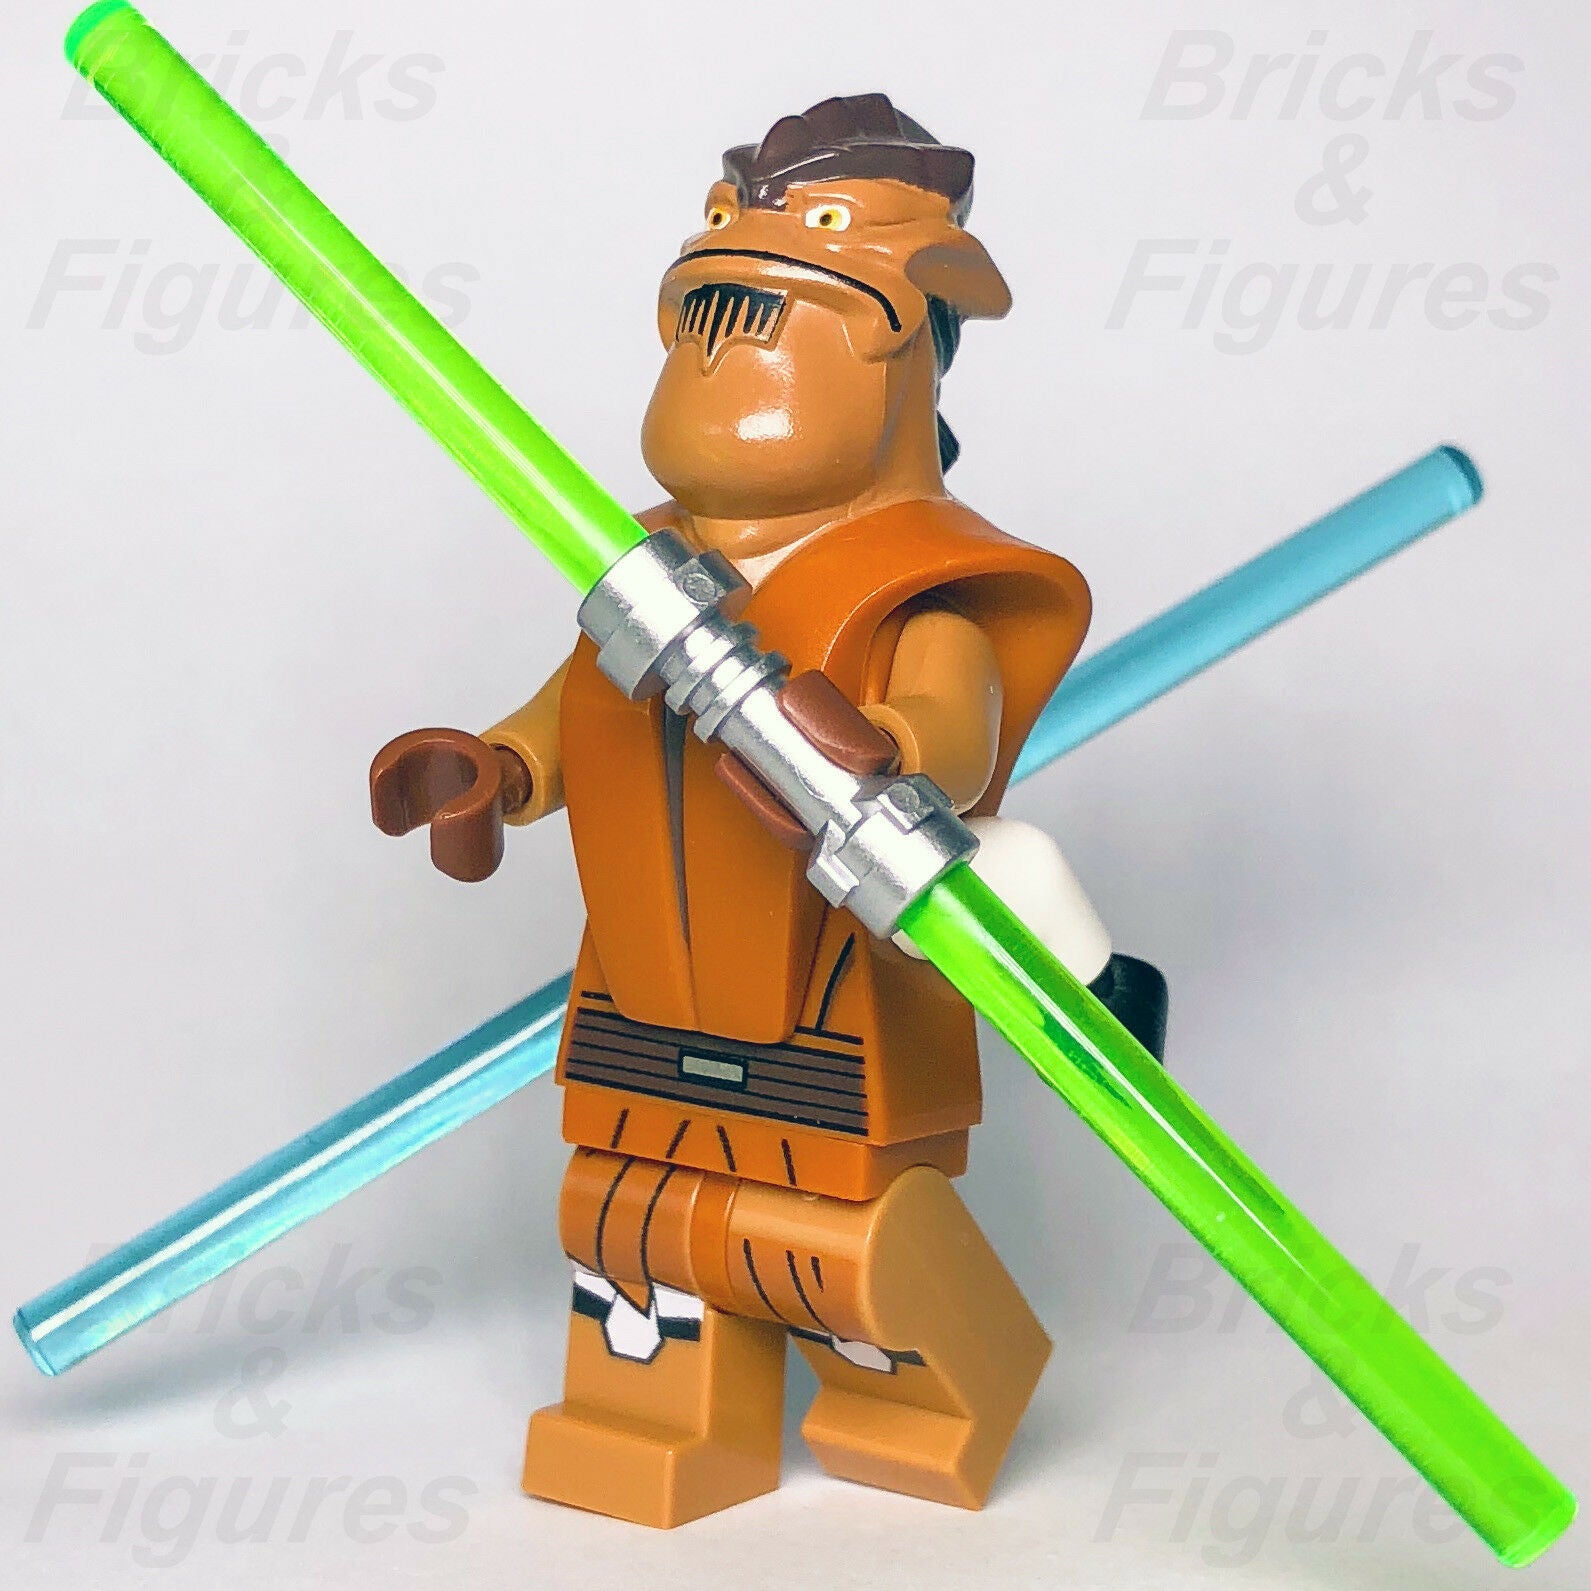 New Star Wars LEGO Pong Krell Jedi Master Clone Wars General Minifigure 75004 - Bricks & Figures